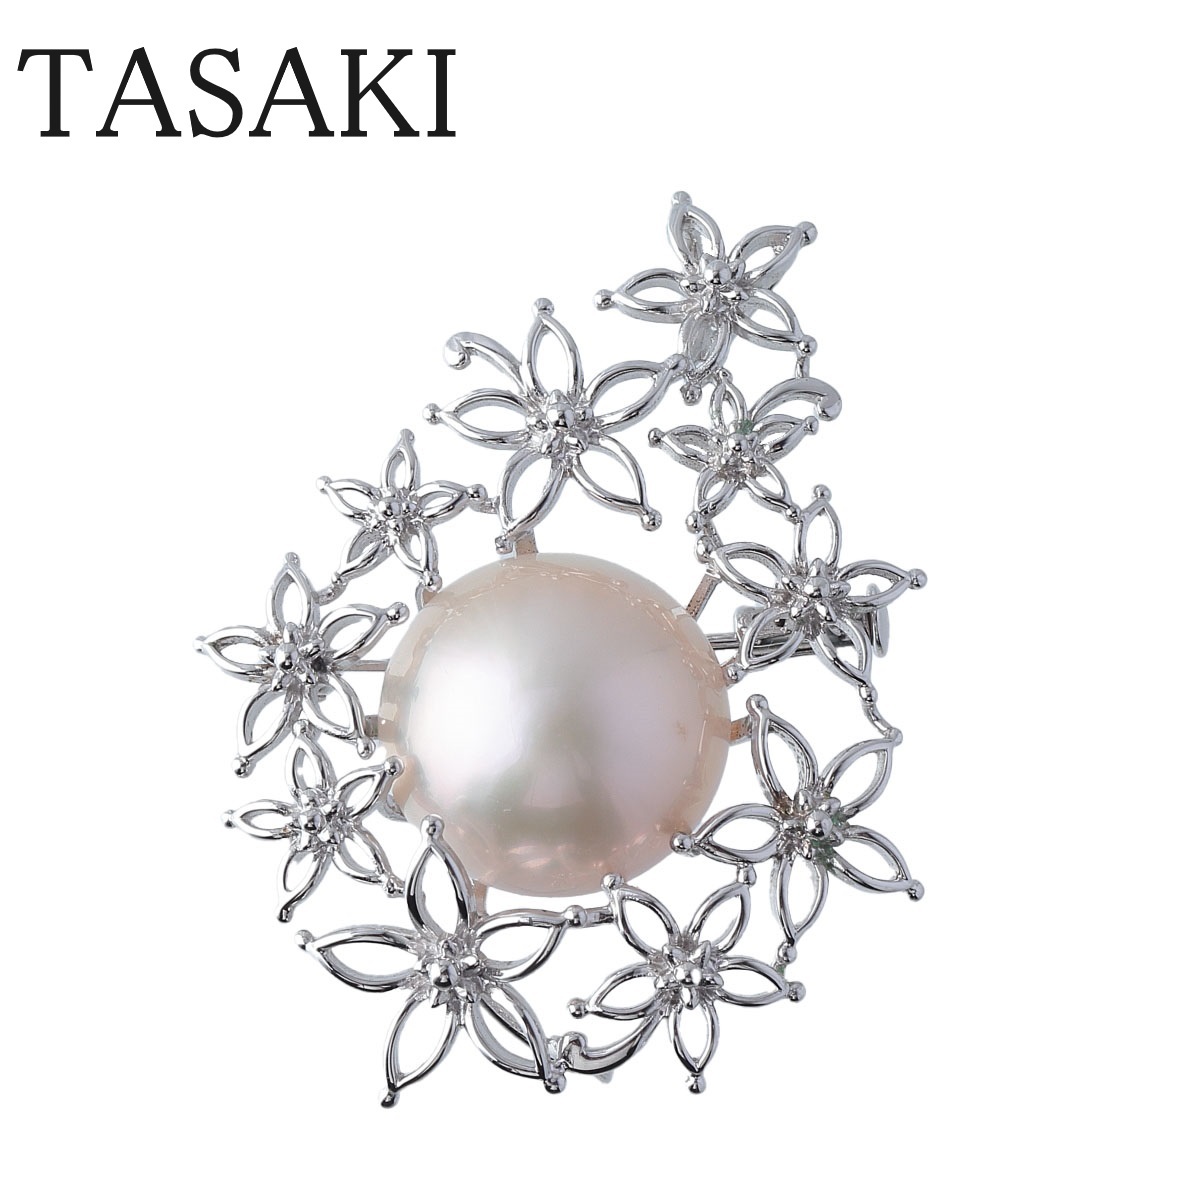 タサキ マベパール ペンダント ブローチ シルバー 16mm TASAKI 田崎真珠【16373】の画像1